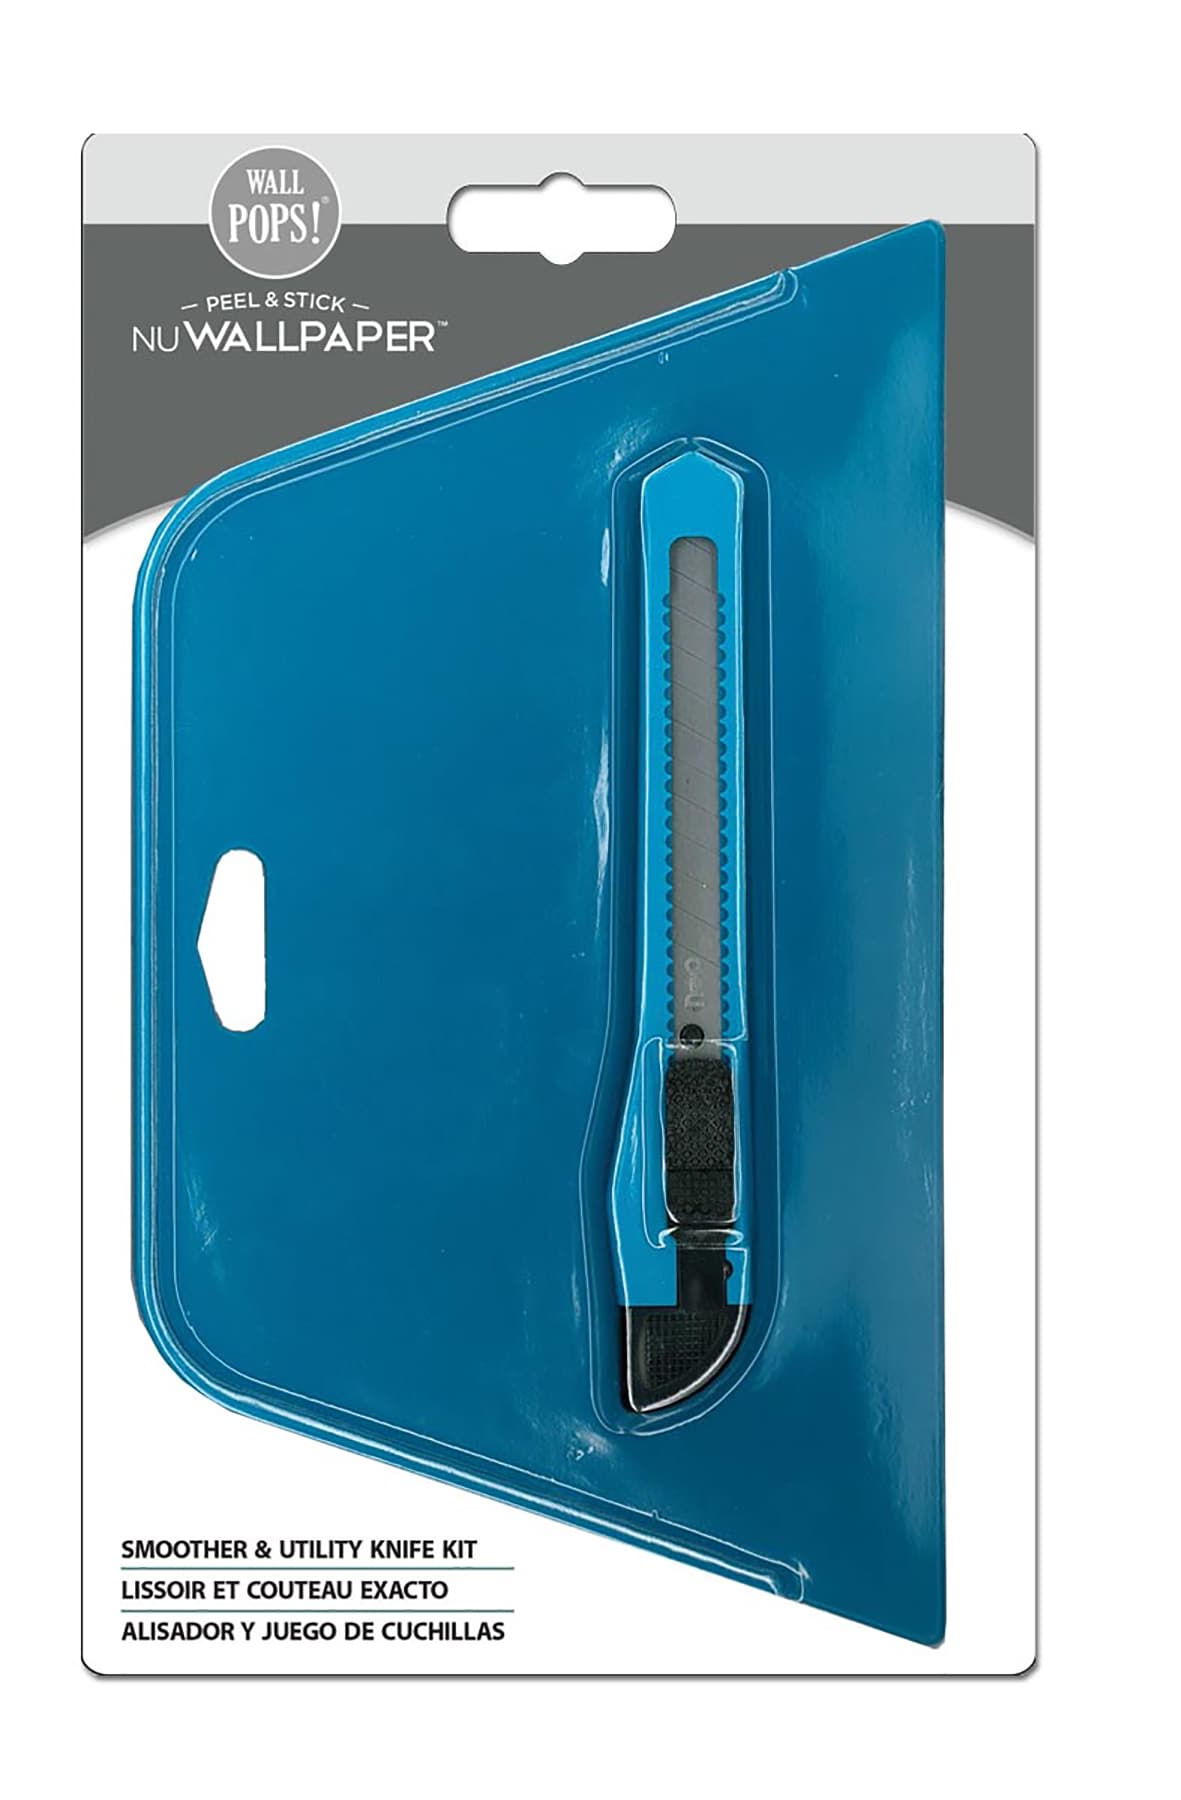 NuWallpaper Multi-purpose Wallpaper Application Kit in the Wallpaper Tools  department at